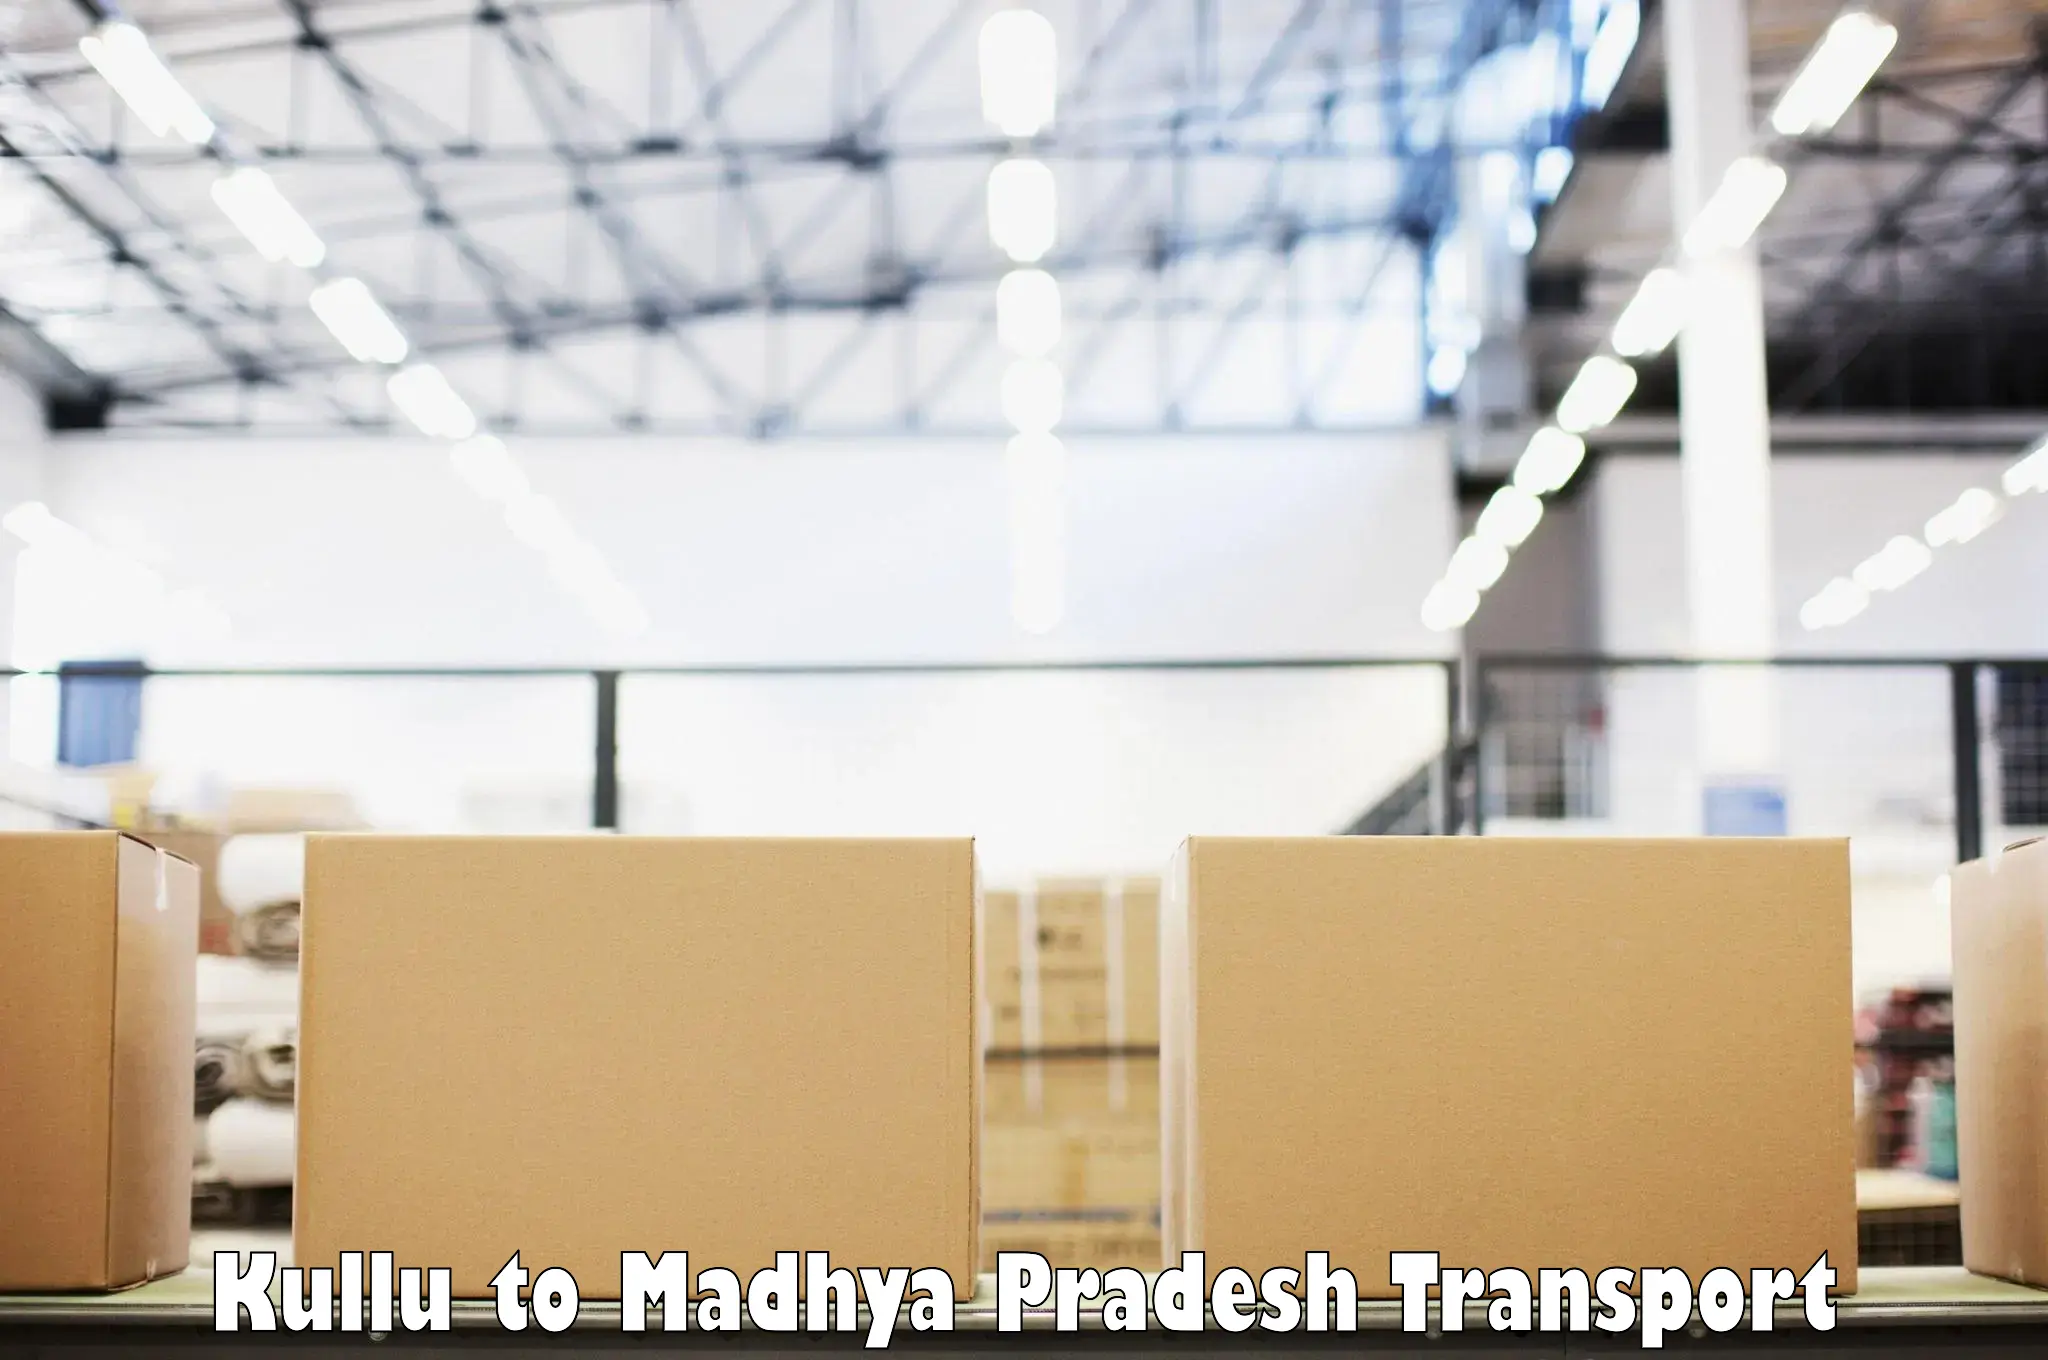 Furniture transport service Kullu to Khandwa